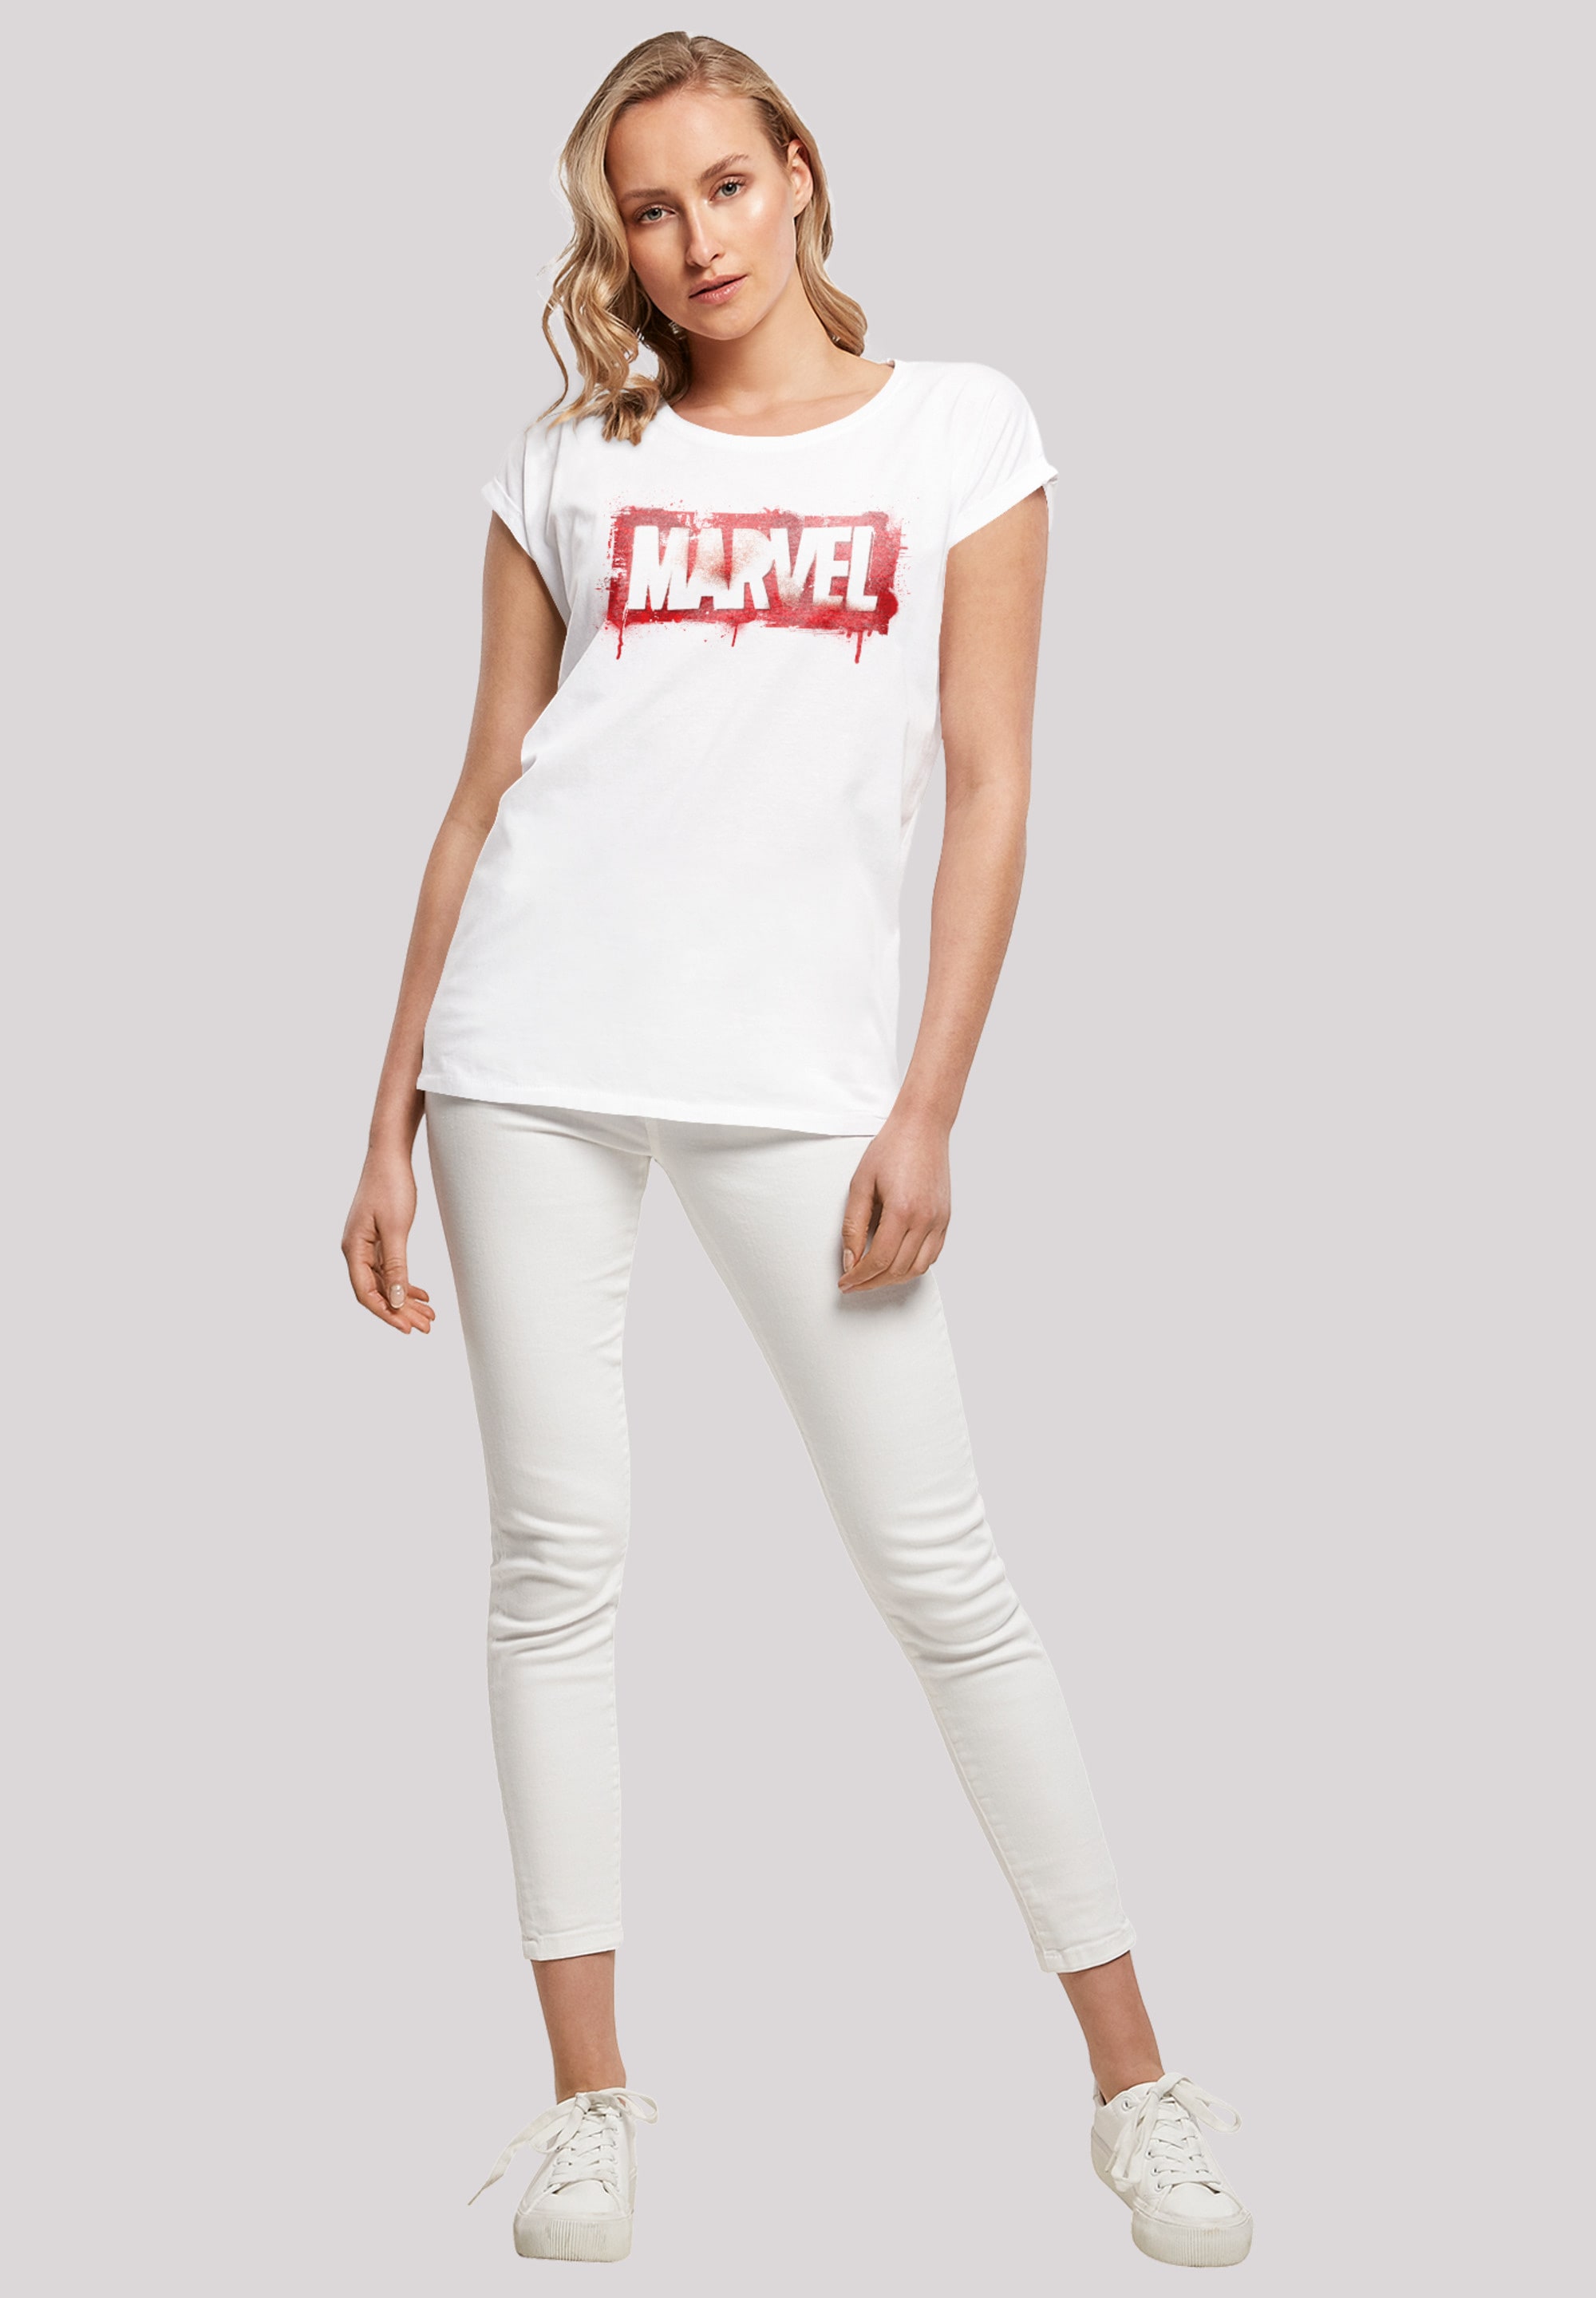 »Marvel T-Shirt F4NT4STIC kaufen Spray Logo«, Print